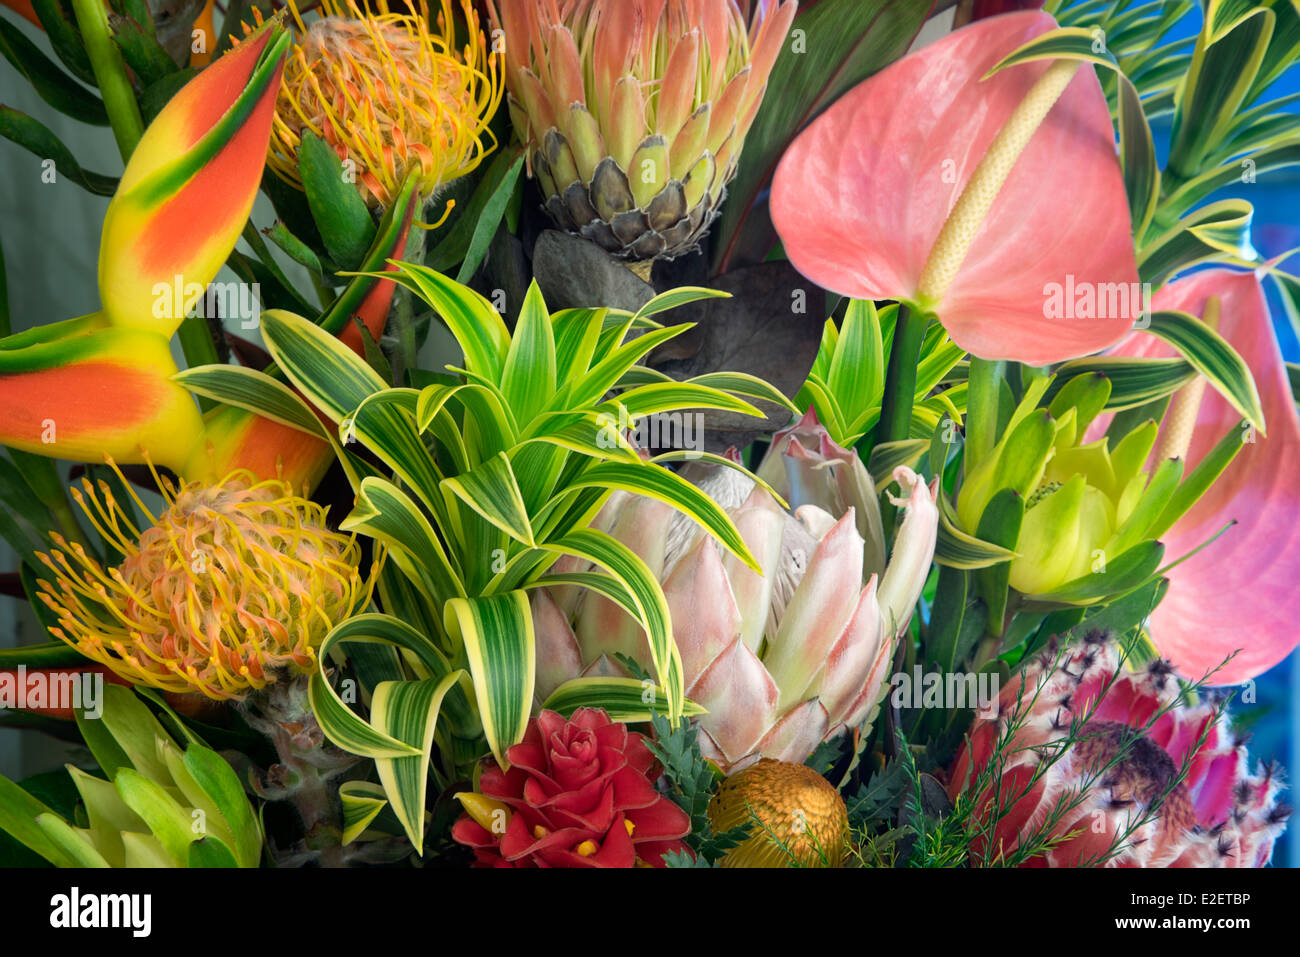 Anzeige der tropischen Blumen. Bukett von tropischen Blumen Maui, Hawaii Stockfoto